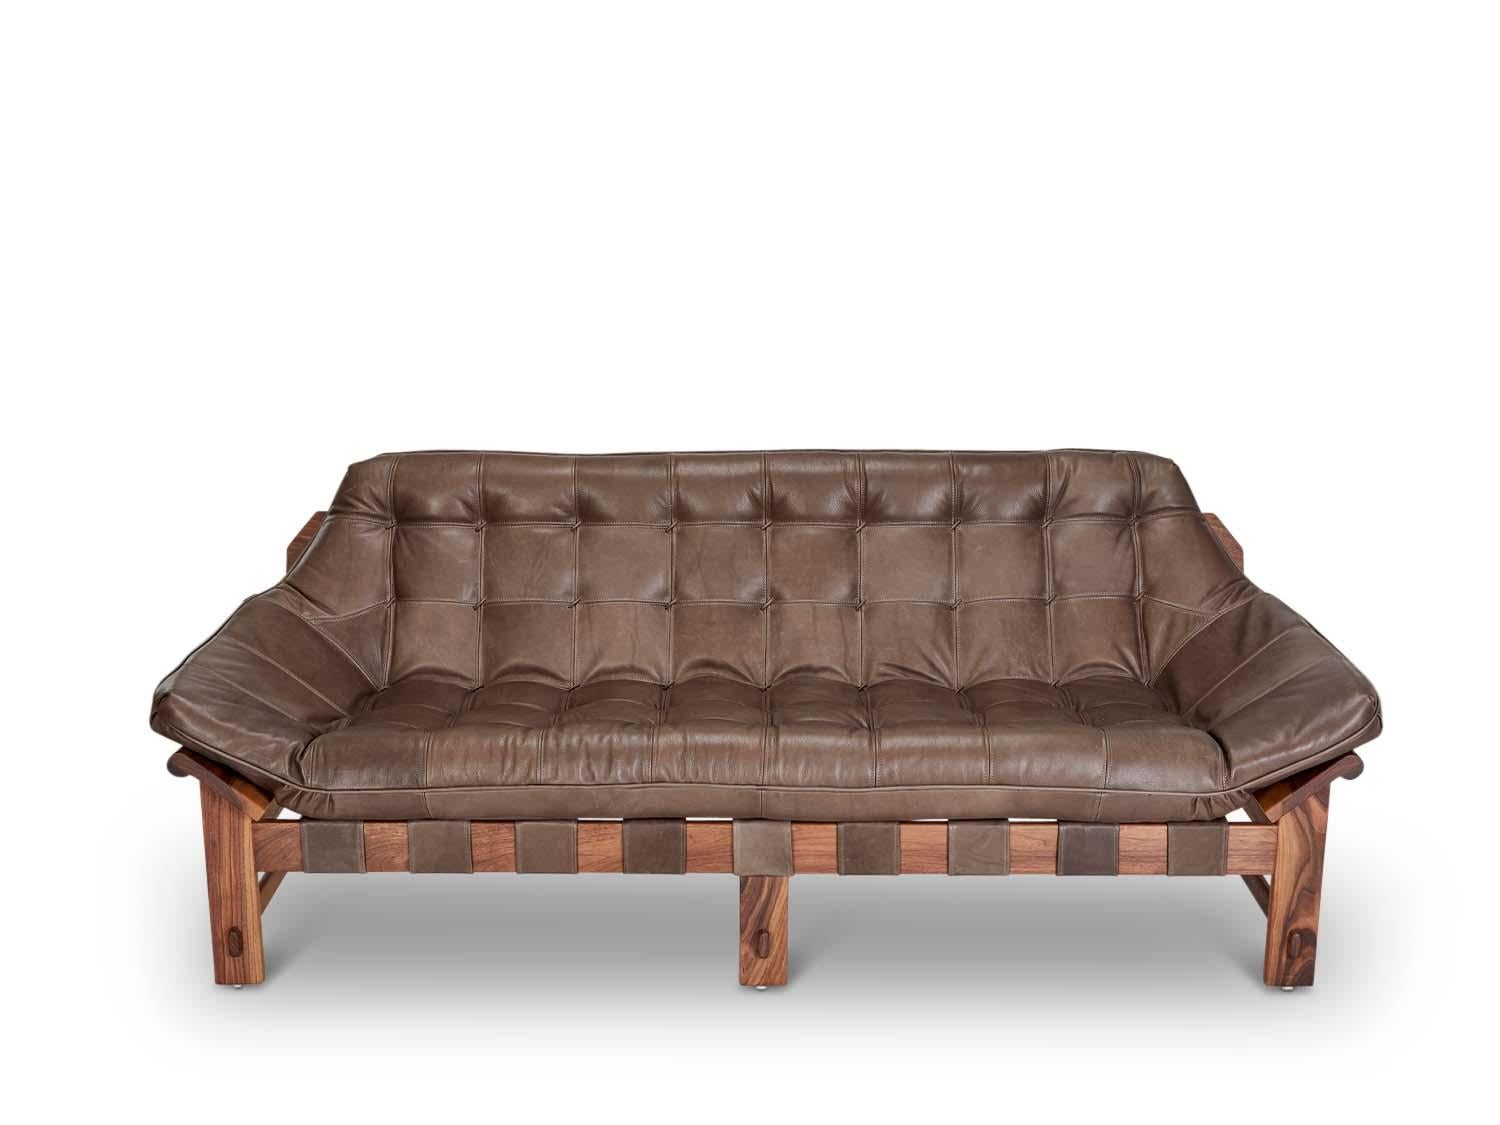 Mid-Century Modern Tan Leather and Walnut Ojai Sofa by Lawson-Fenning